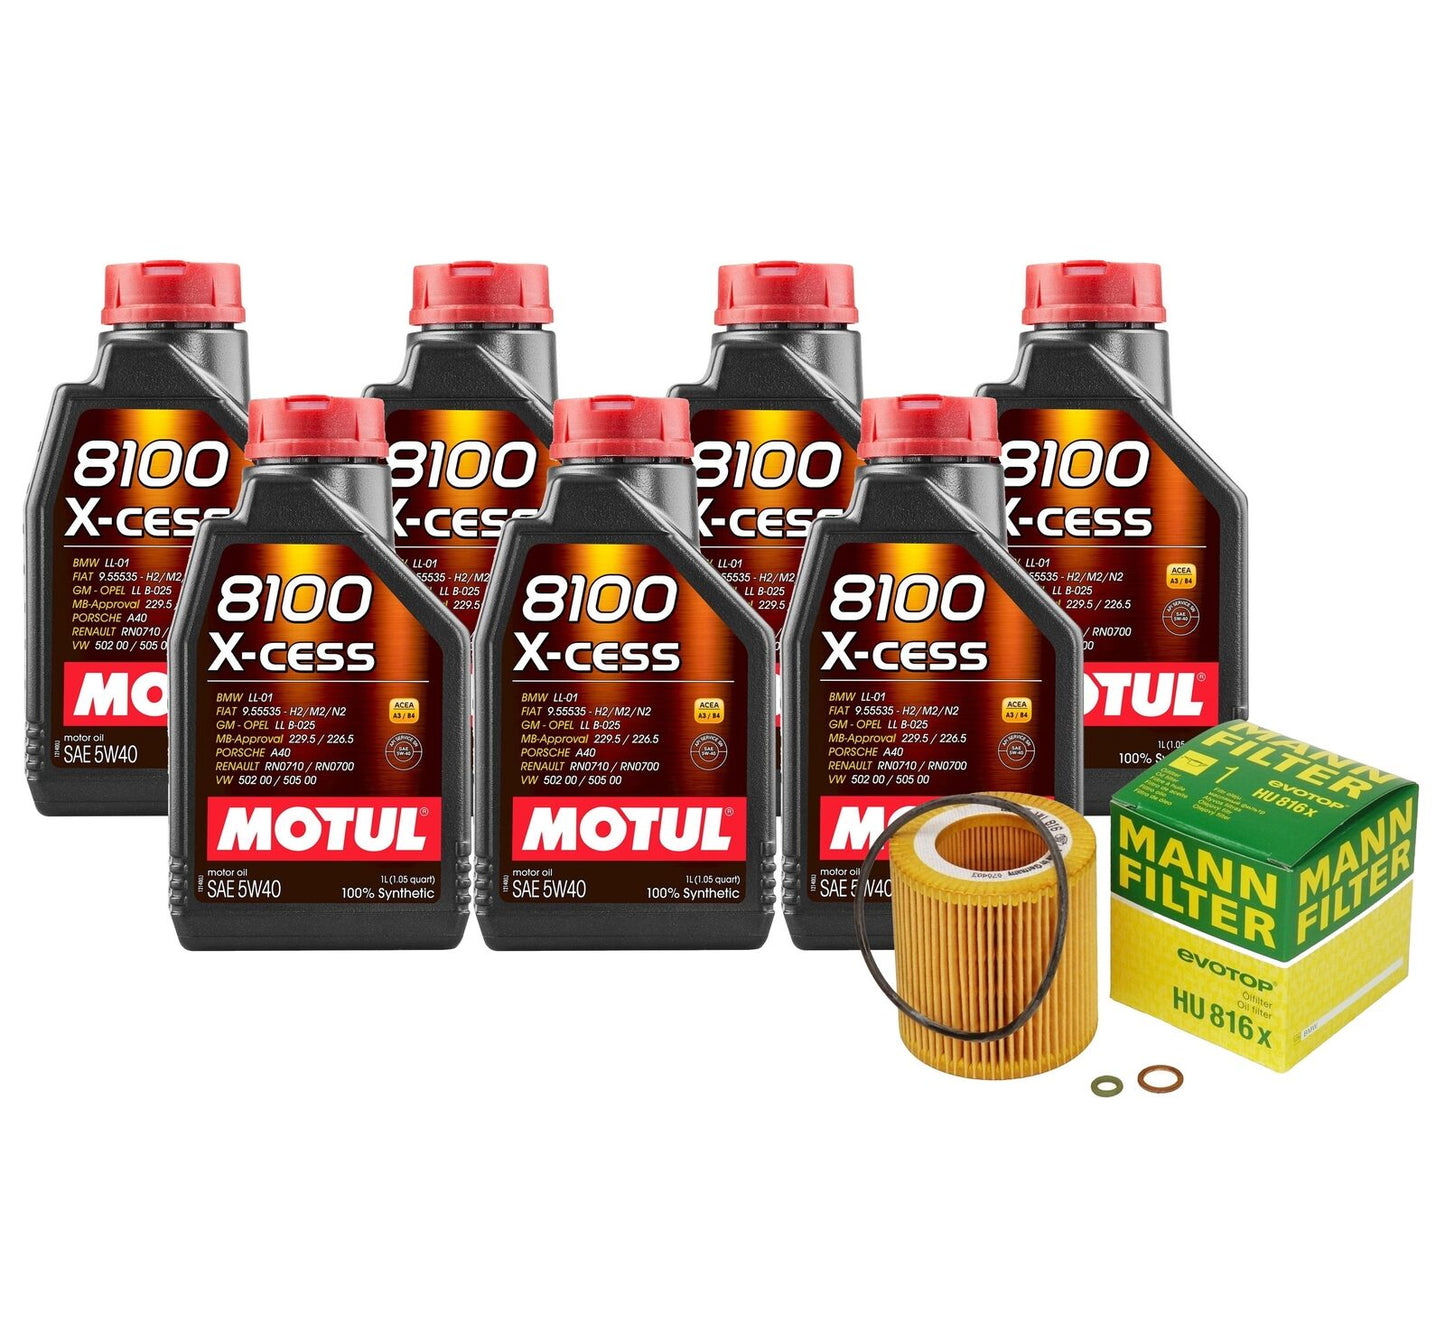 N54 Motul Oil Change kit